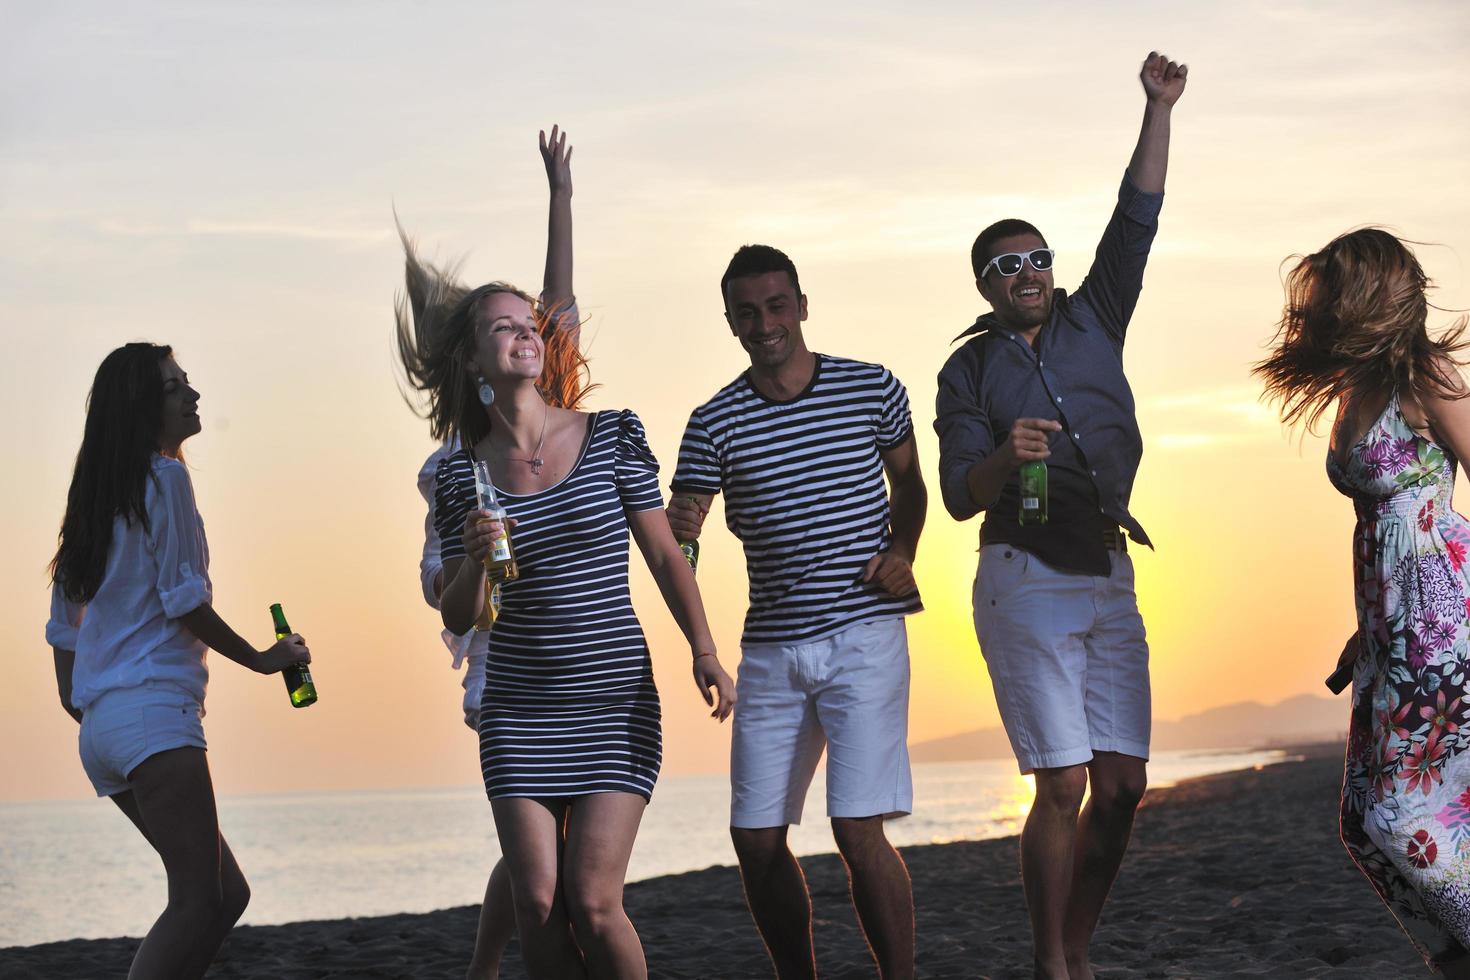 gruppo di giovane persone godere estate festa a il spiaggia foto